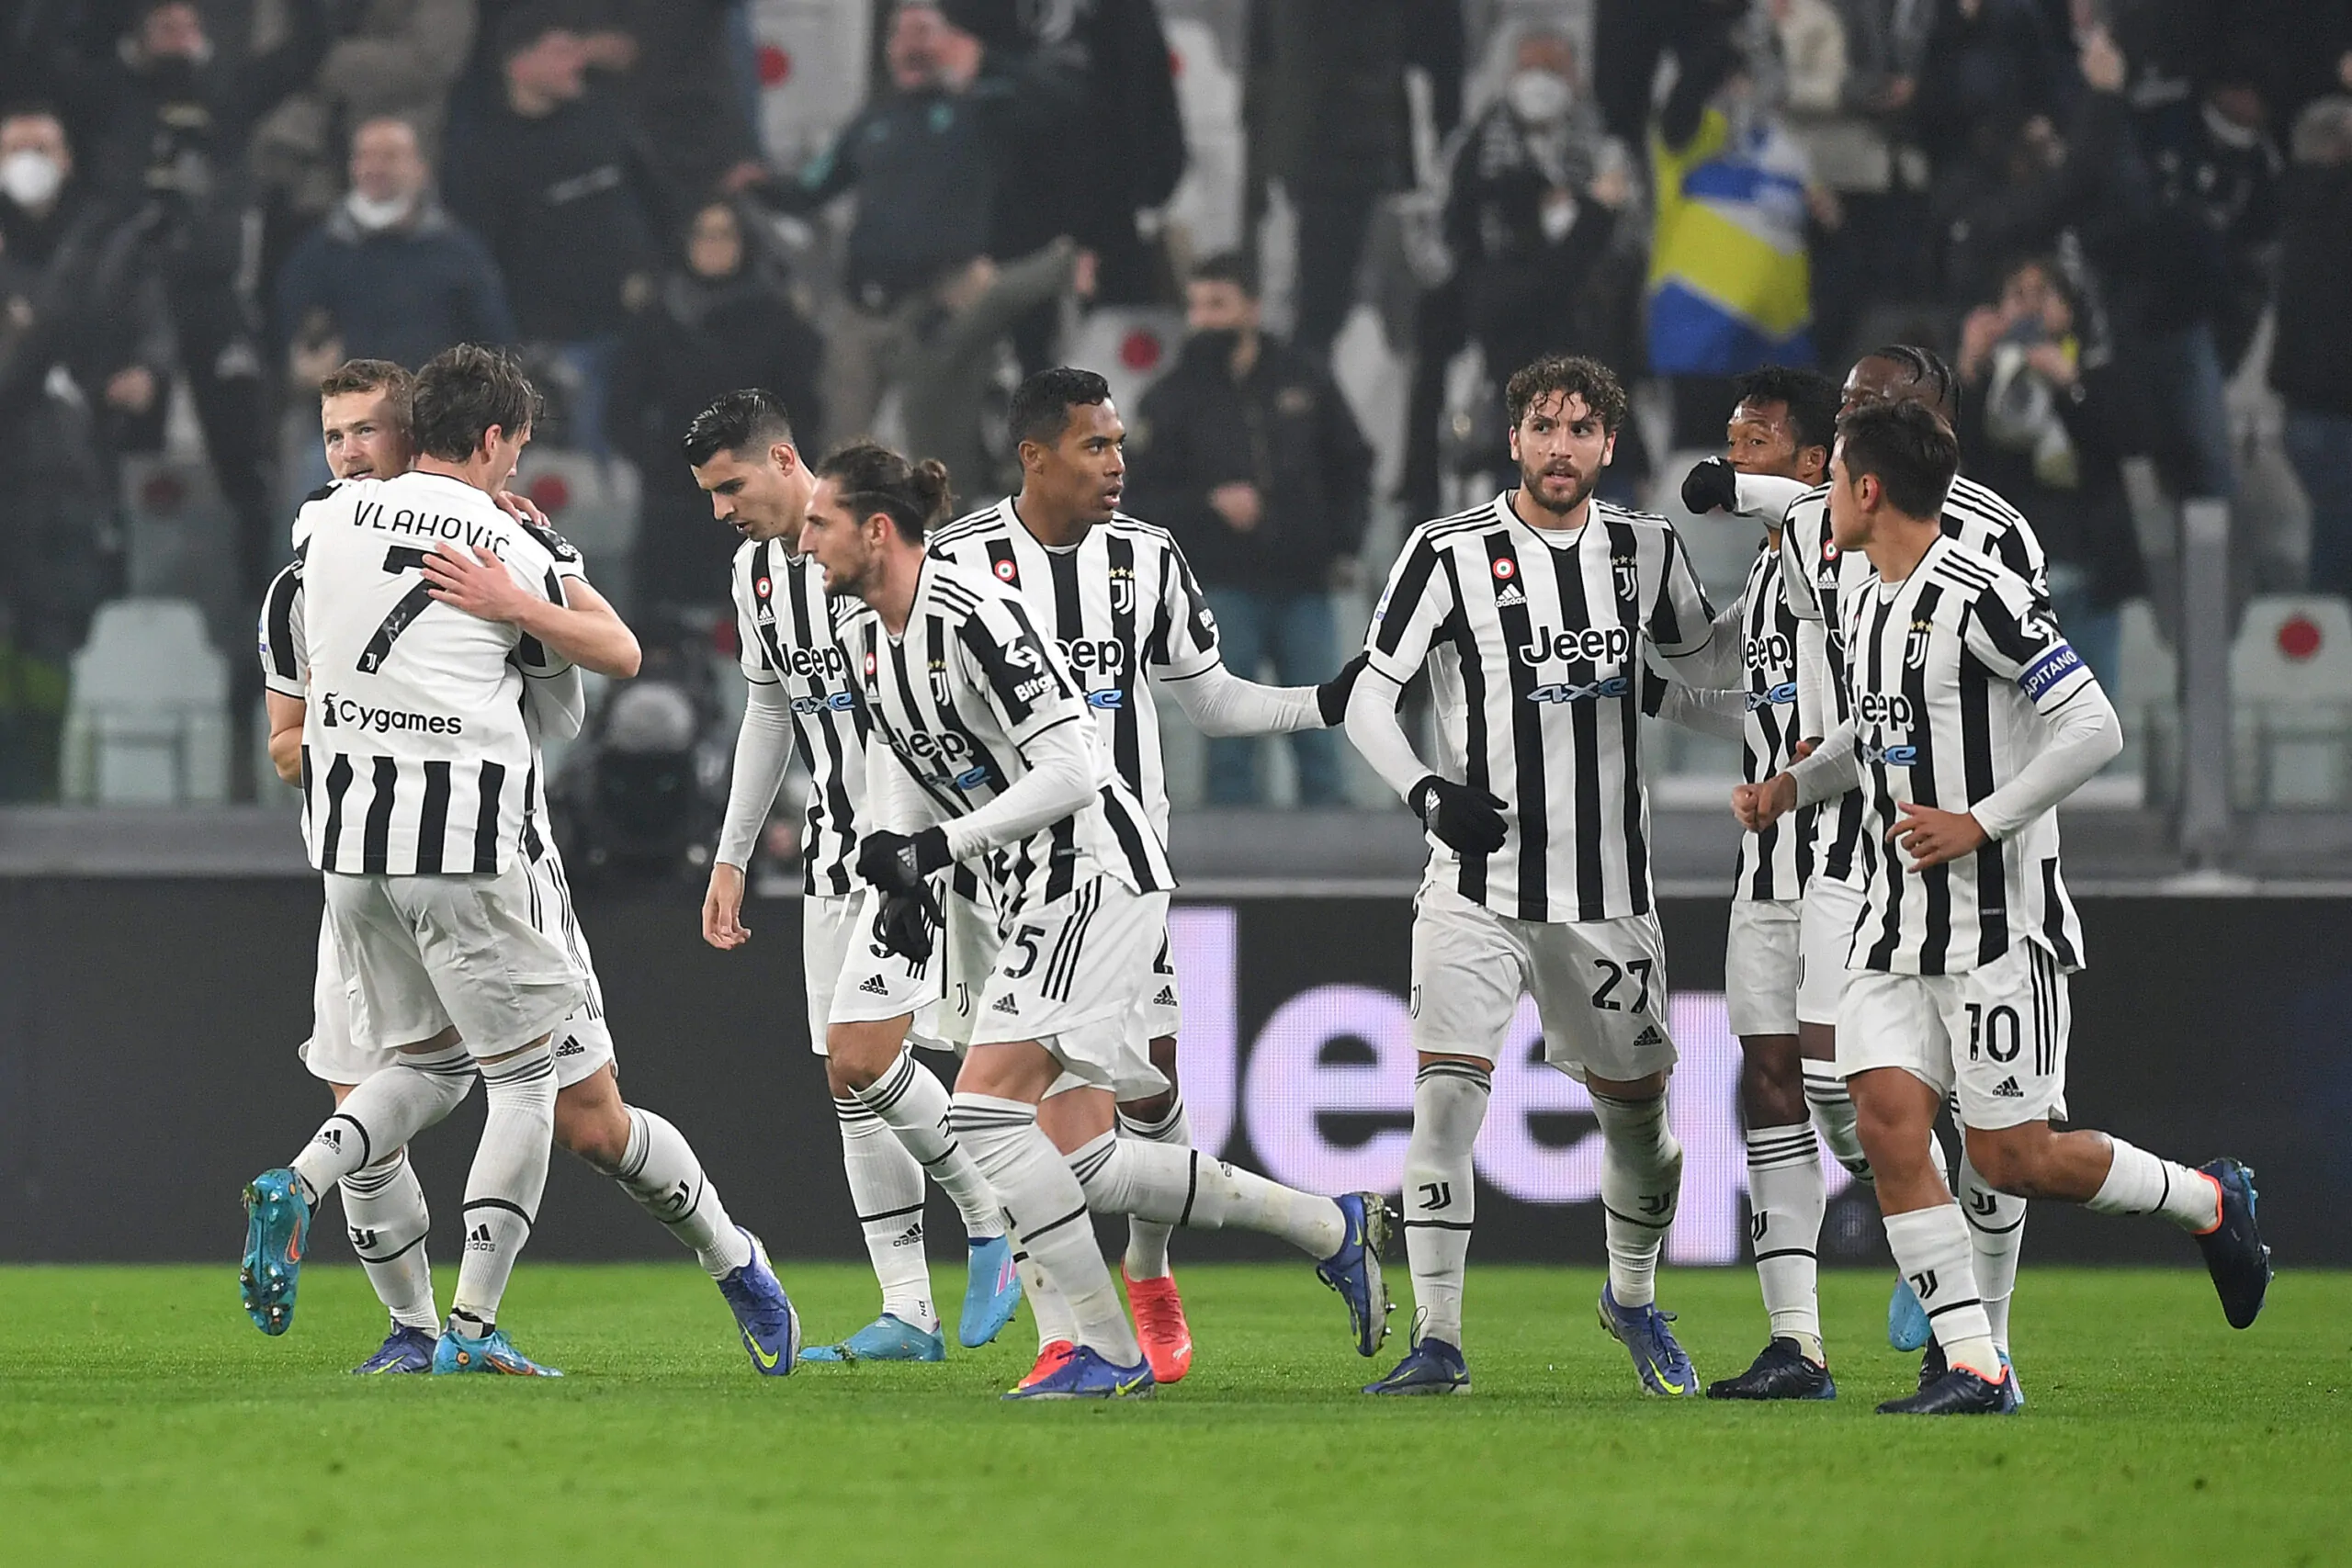 Ufficiale l’orario di Juventus-Inter: gli anticipi e posticipi di Serie A